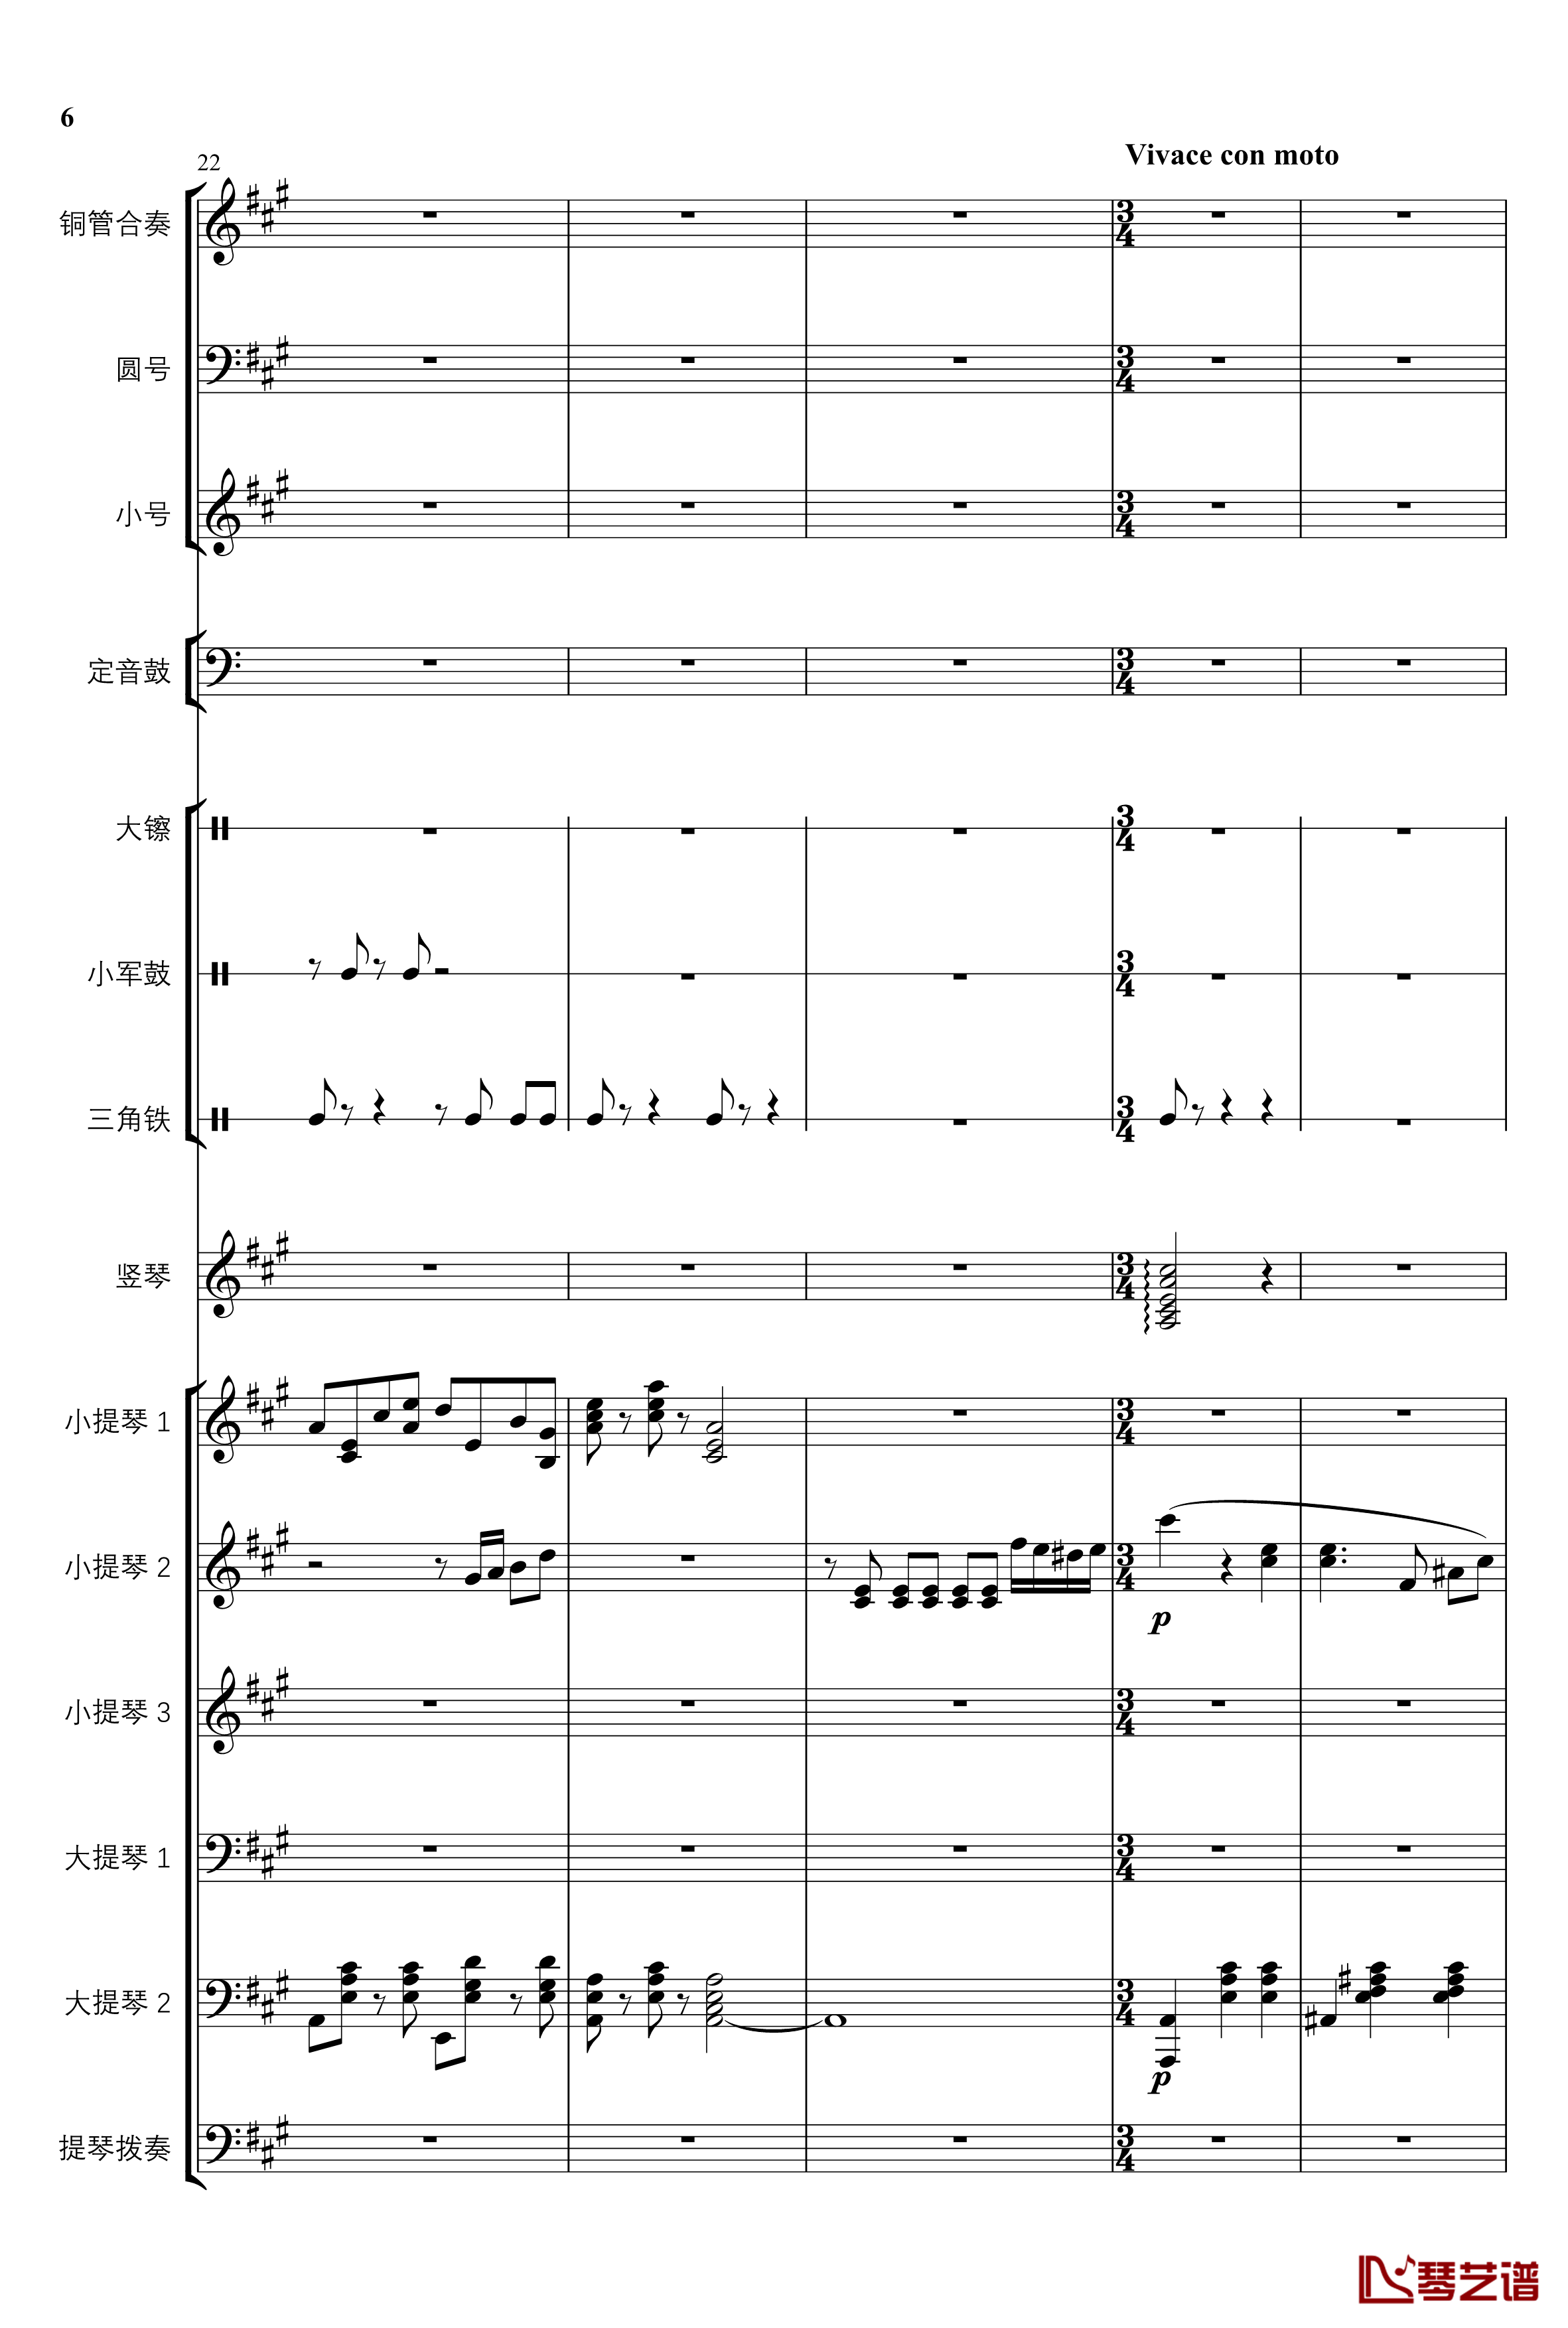 2013考试周的叙事曲钢琴谱-管弦乐重编曲版-江畔新绿6